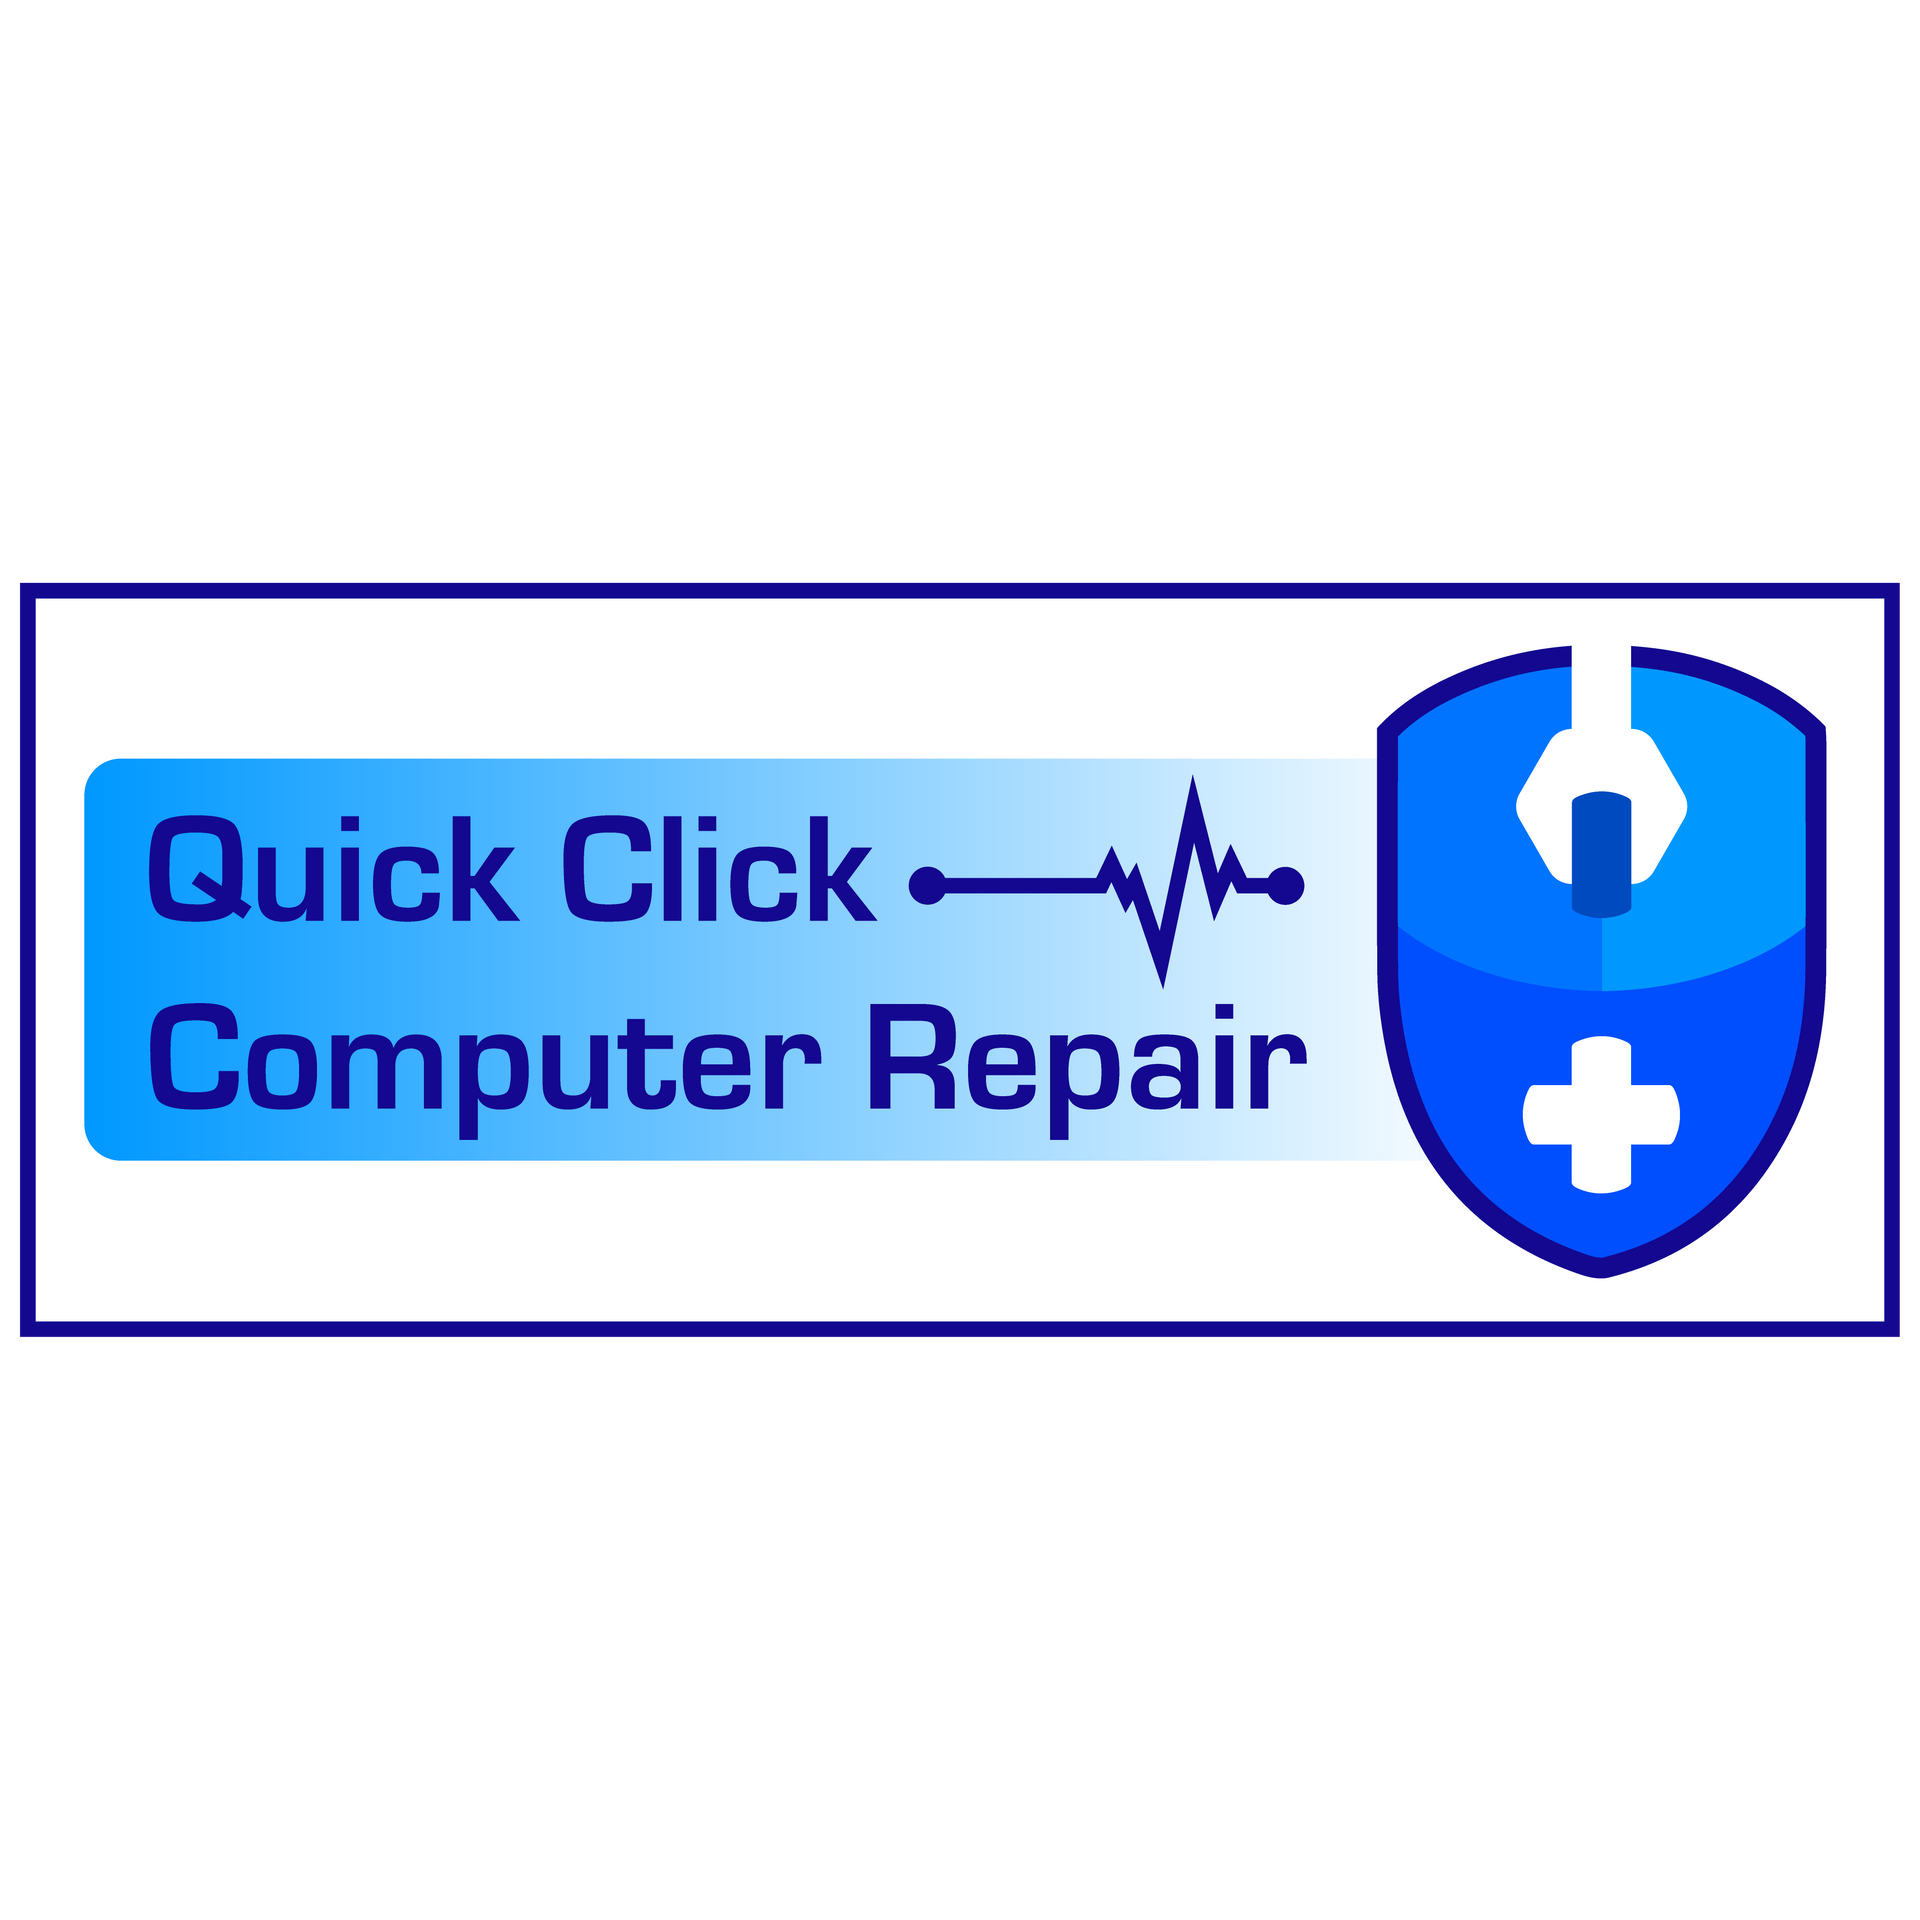 Quick Click Computer Repair